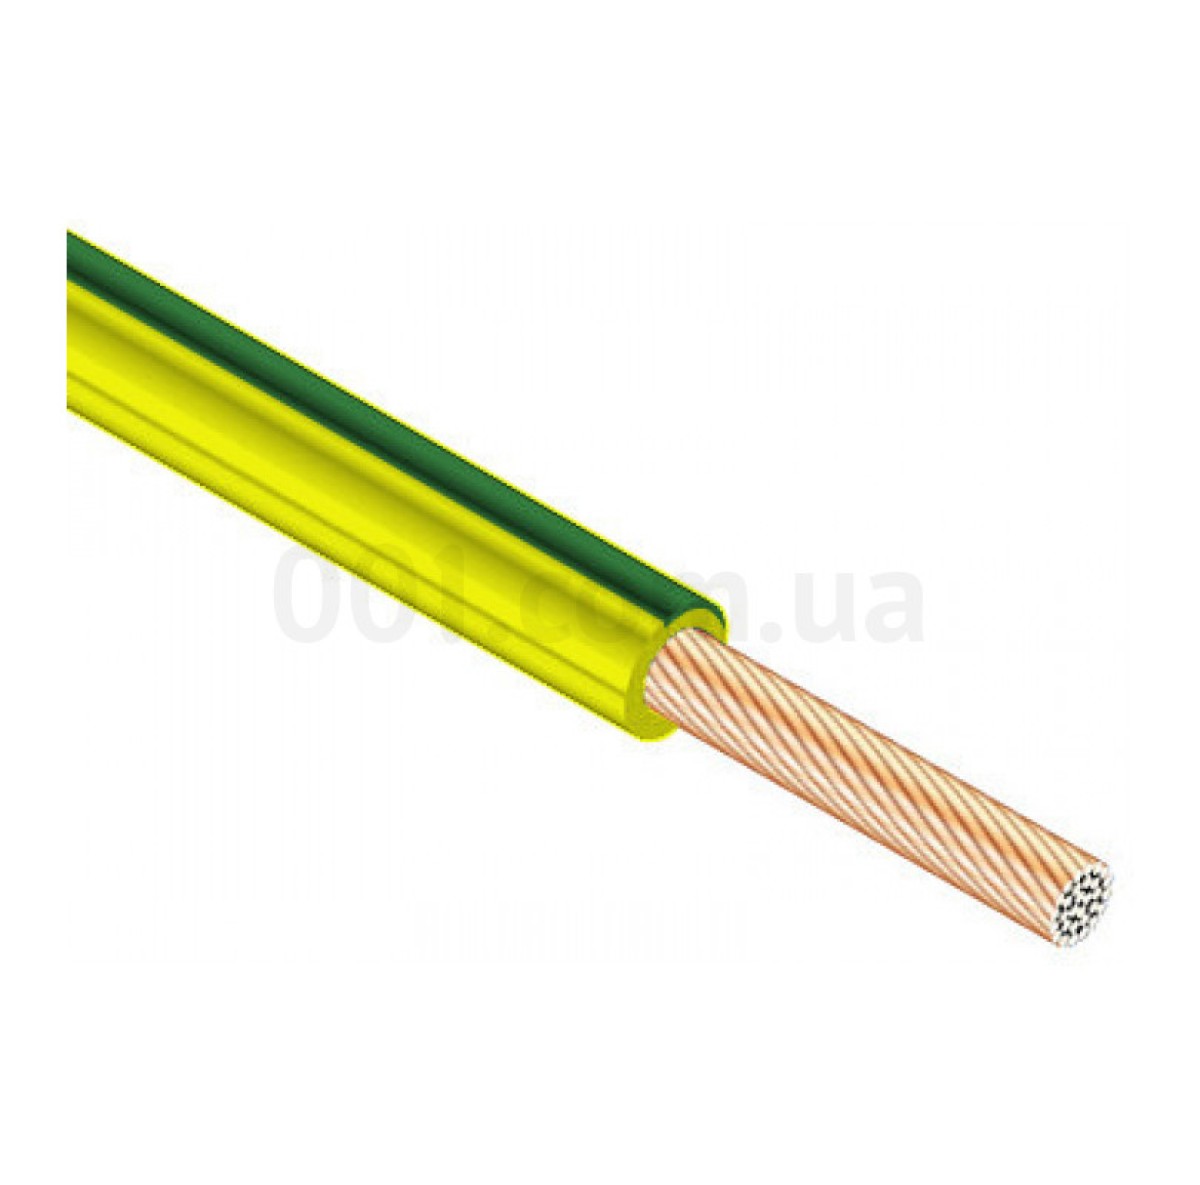 Провід установчий ПВ-3 4,0 мм² жовто-зелений з мідними жилами (ГОСТ), ЗЗКМ 256_253.jpg